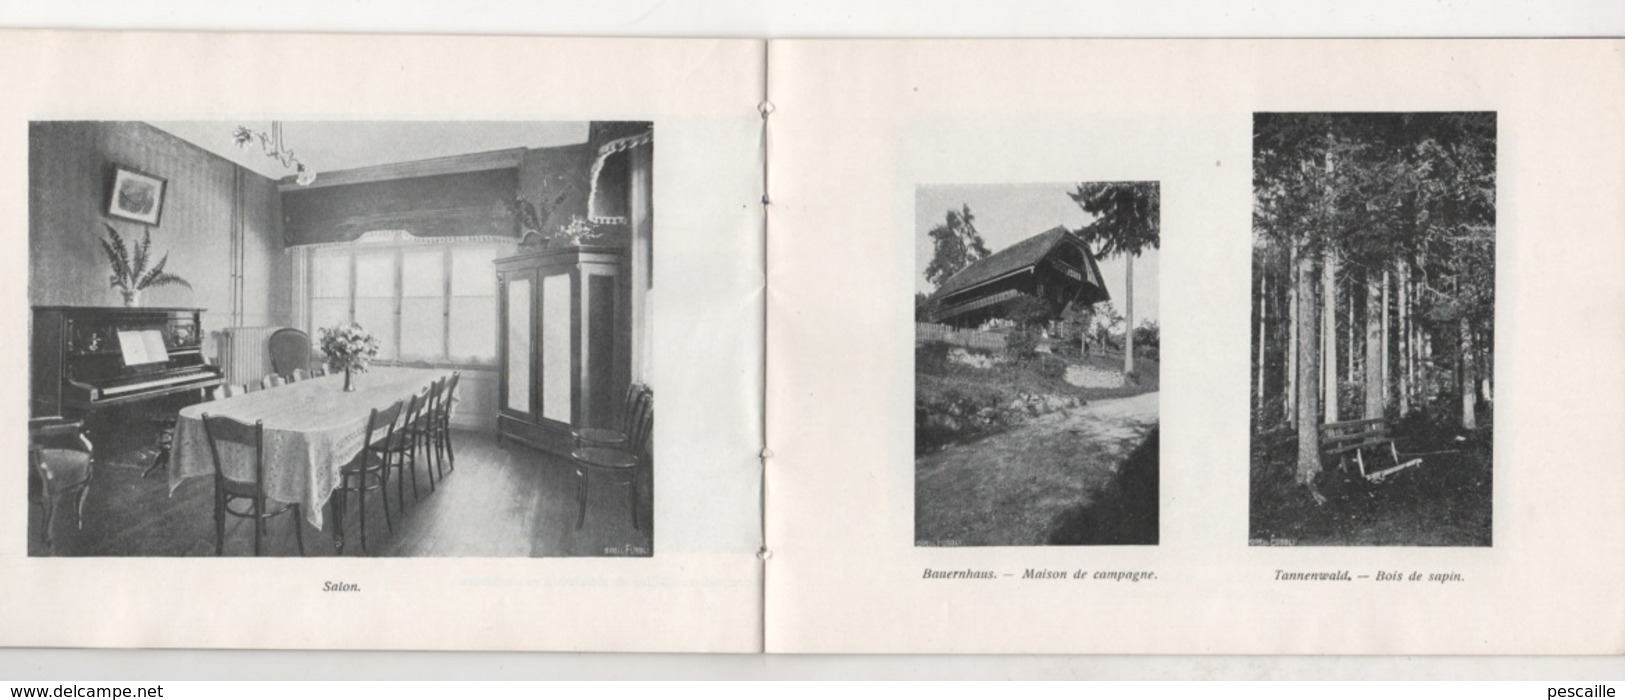 BEAU LIVRET HOTEL JUNGFRAU - GOLDIWIL OB THUN - SCHWEIZ - M. BLATTER PROPRIETAIRE - 1911 - 23 PAGES AVEC PHOTOS